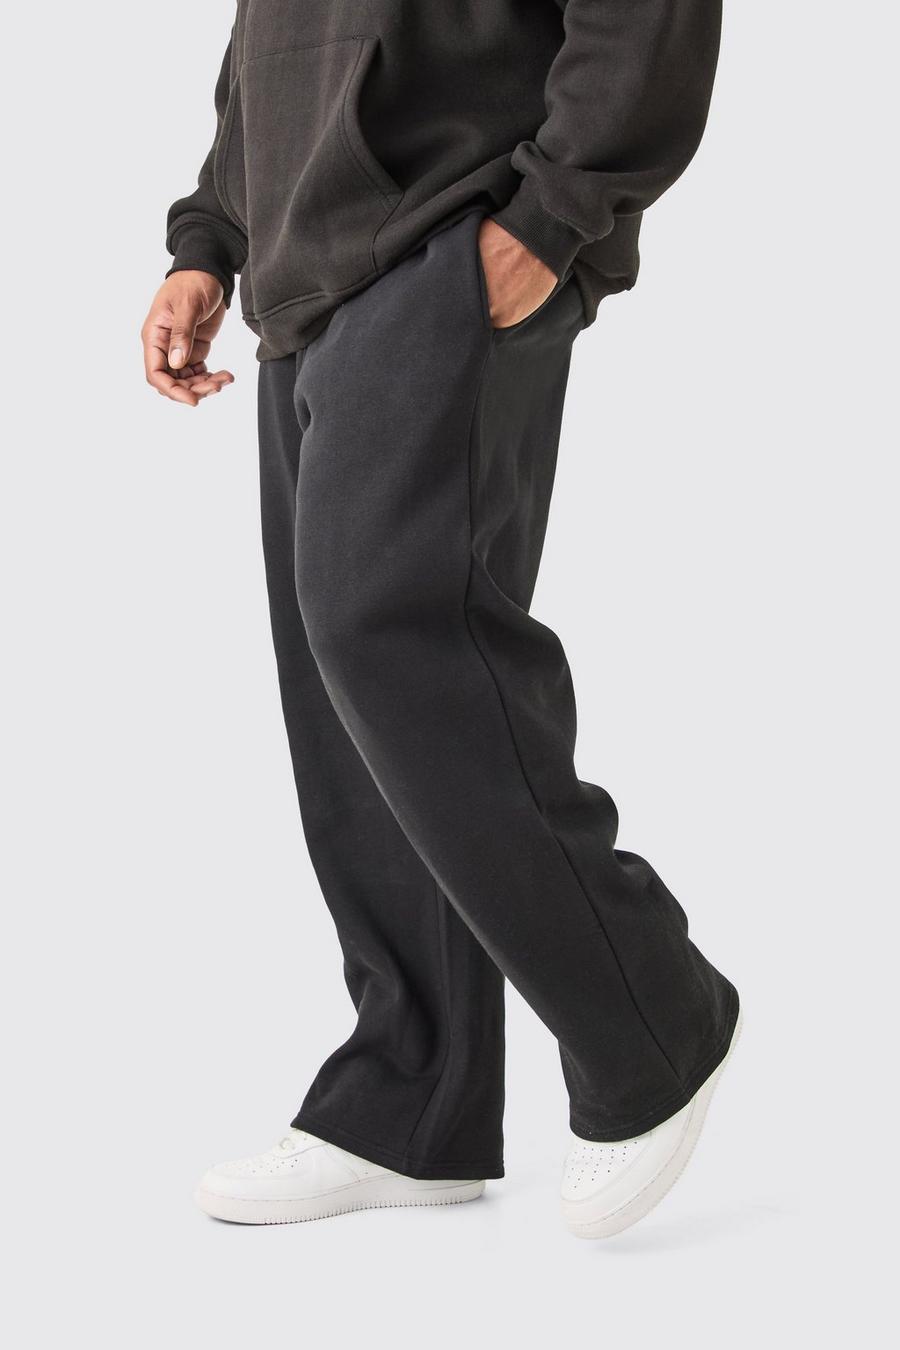 Pantaloni tuta Plus Size Basic rilassati neri, Black